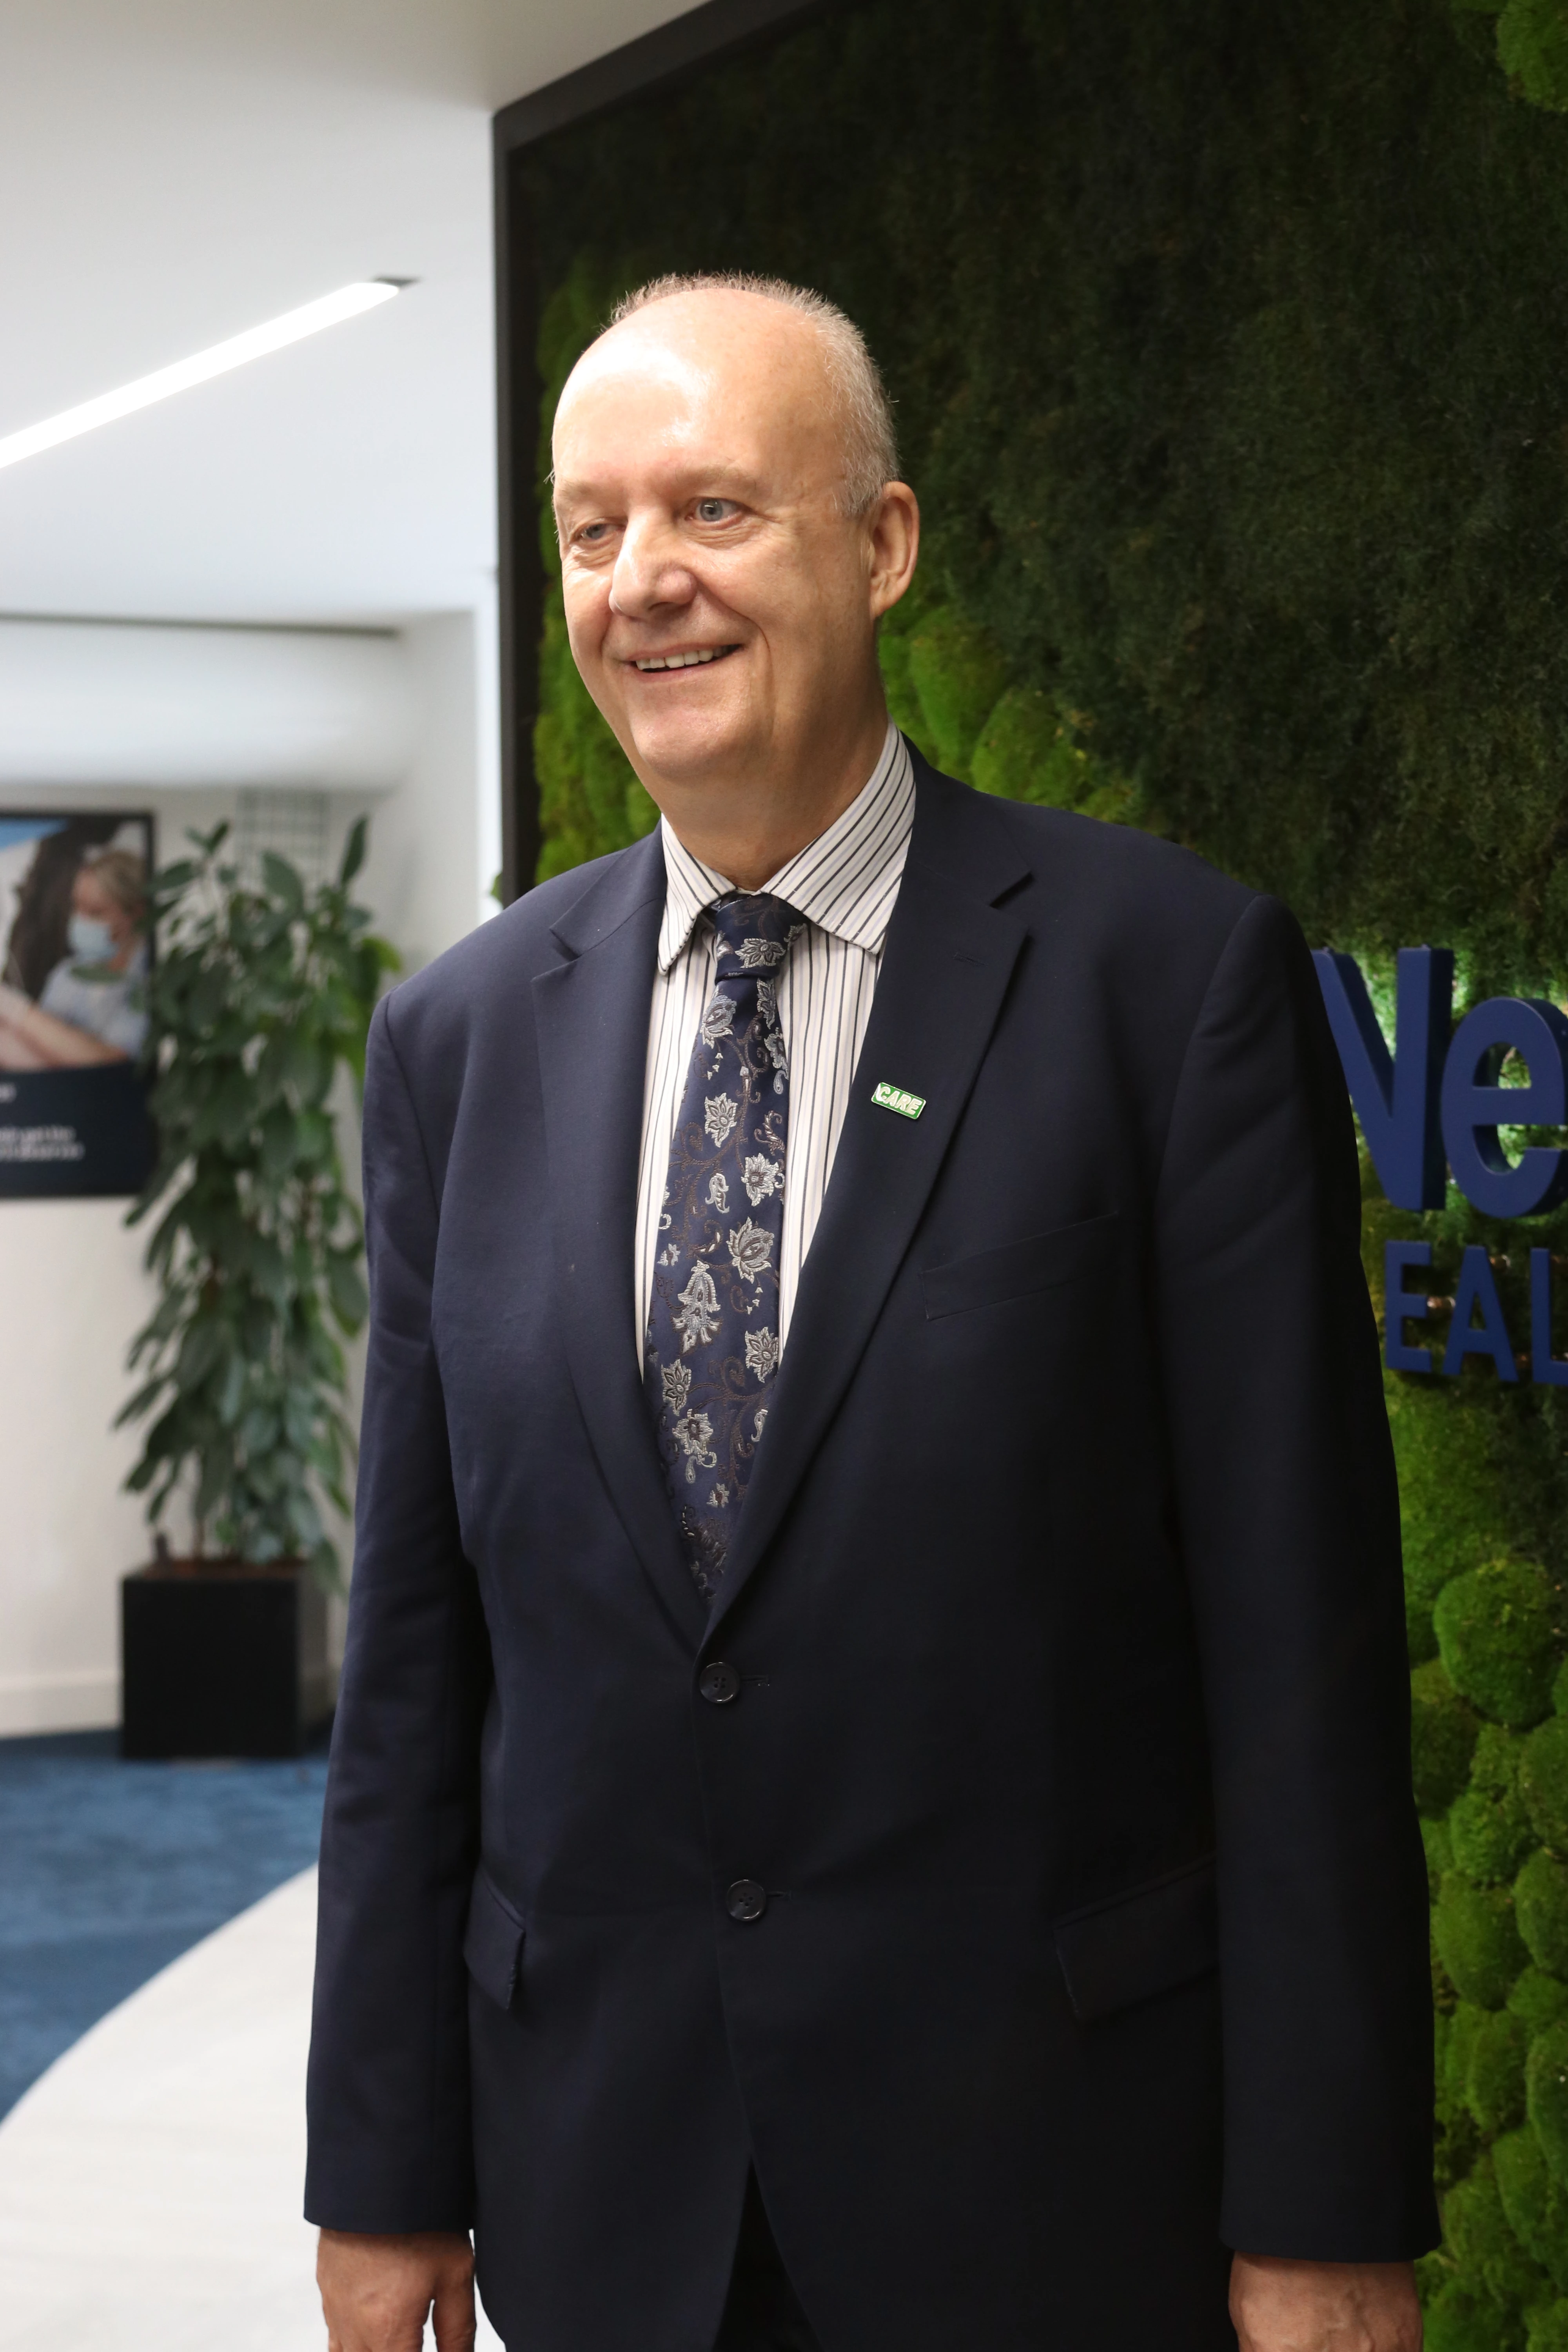 Professor Martin Green, Chief Executive, Care England